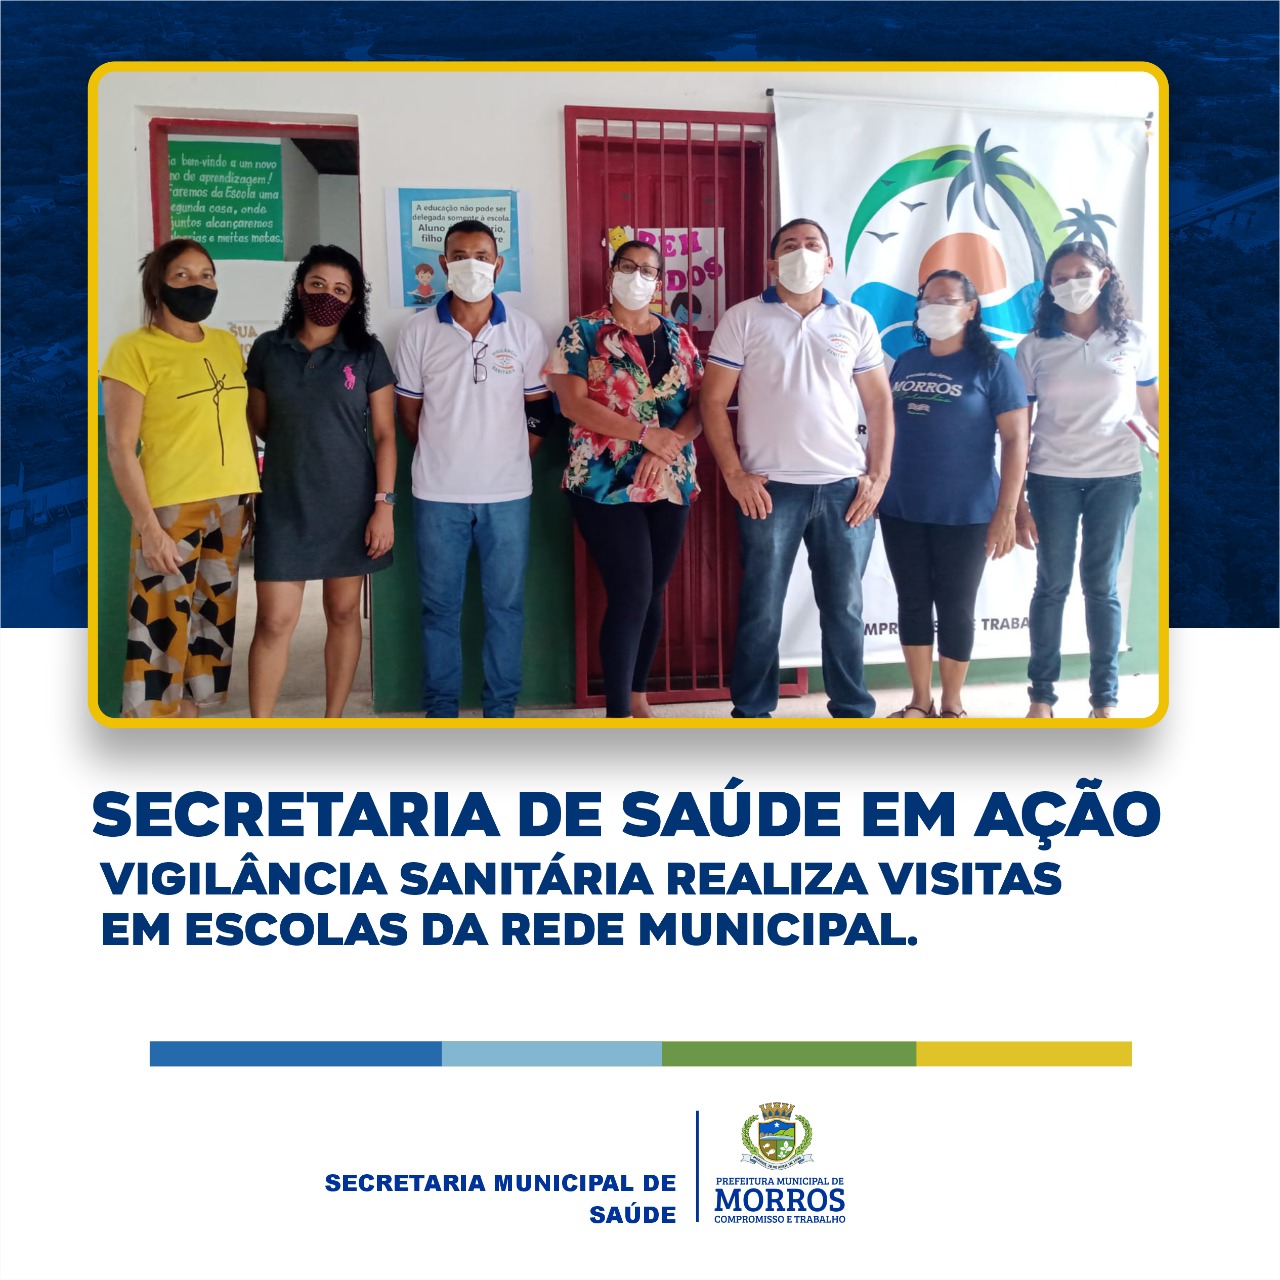 A Secretaria Municipal de Saúde, através do Departamento de vigilância sanitária está realizando visitas nas escolas municipais